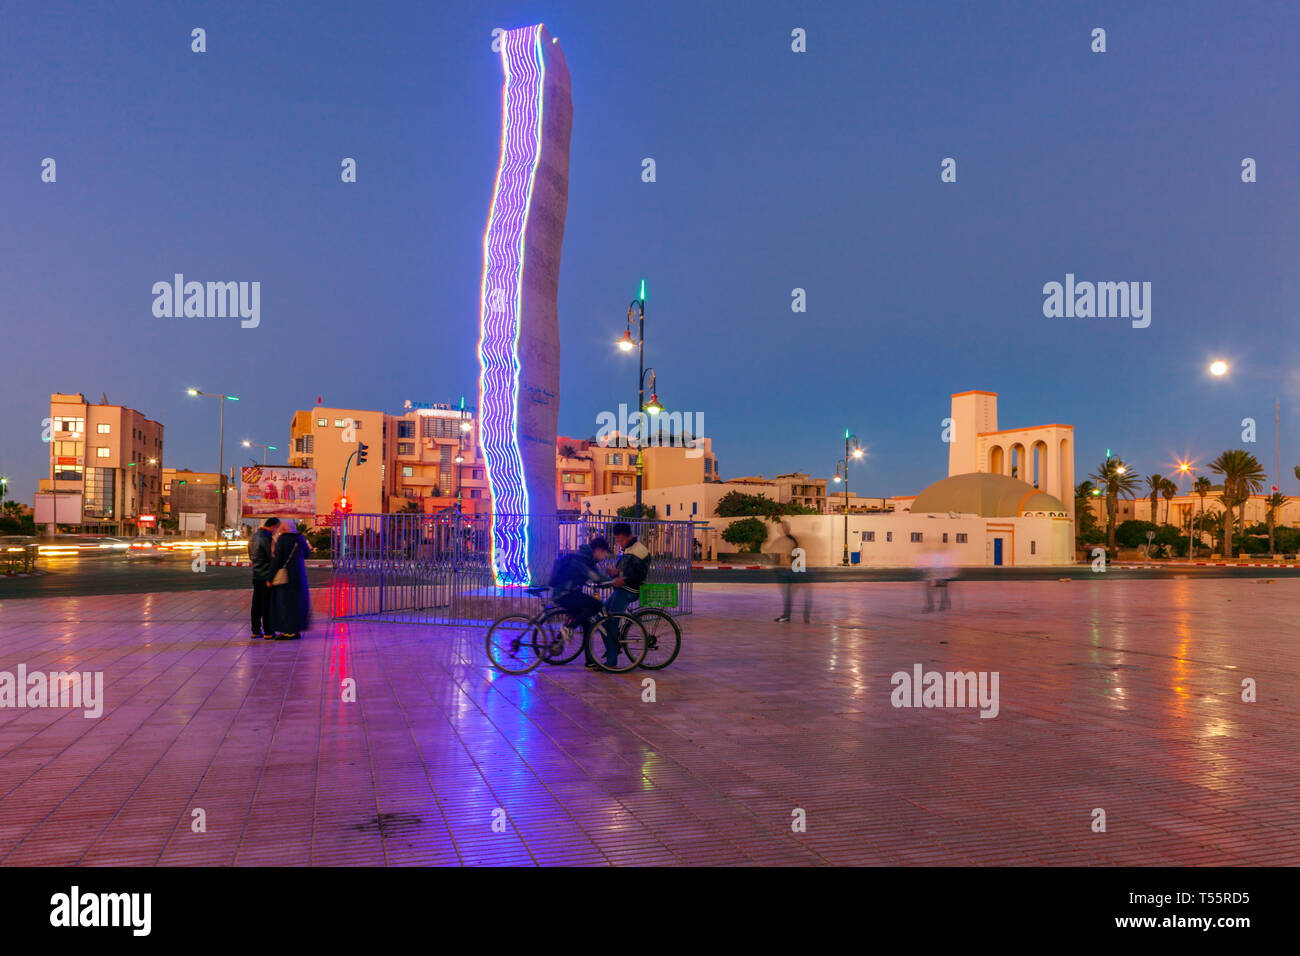 La sculpture moderne dans la région de Town Square au coucher du soleil à Dakhla, Maroc Banque D'Images